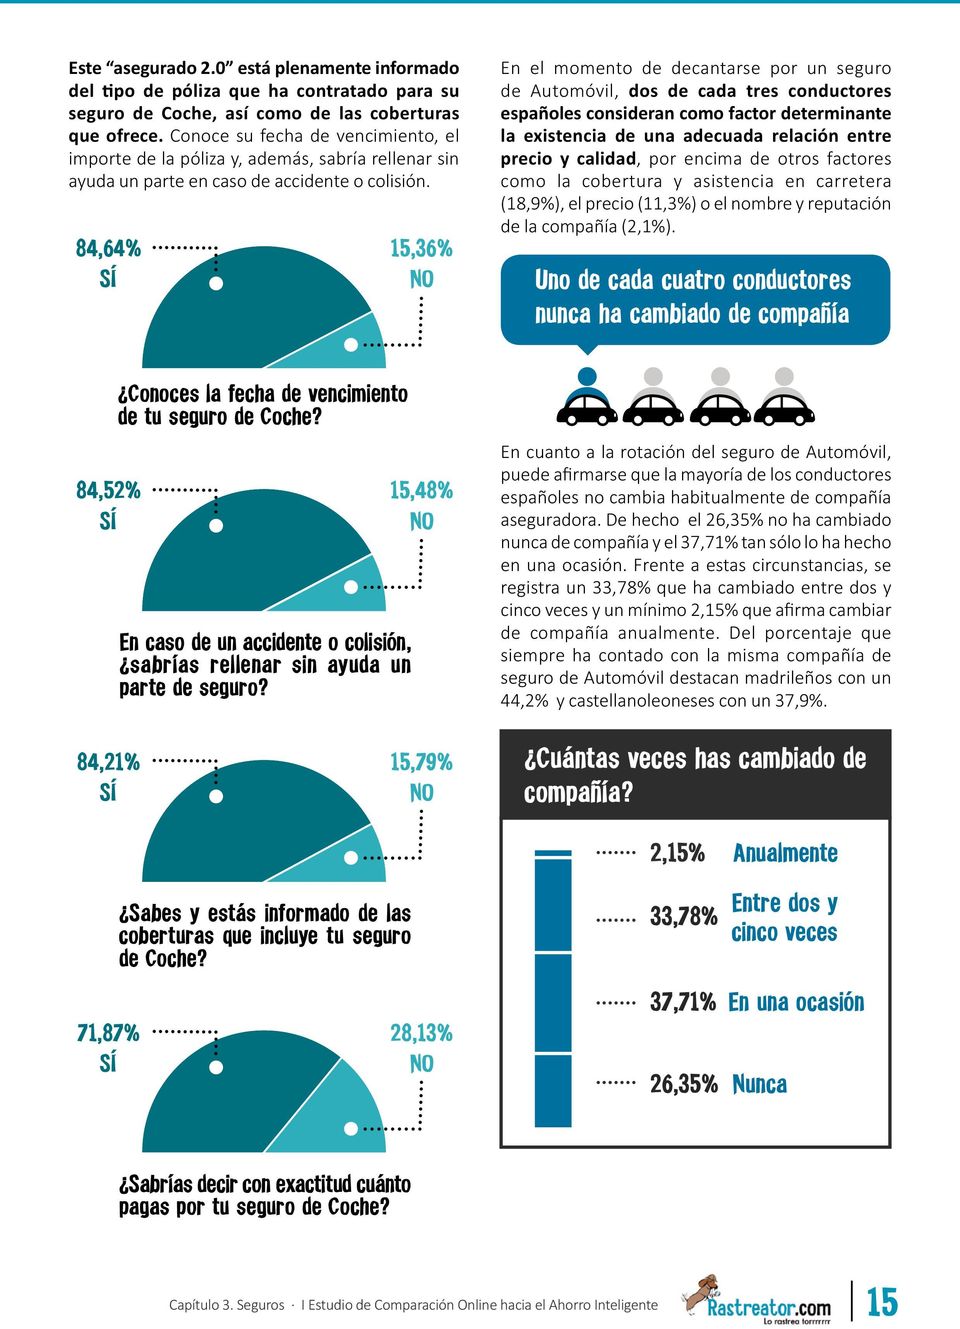 84,64% SÍ 15,36% NO En el momento de decantarse por un seguro de Automóvil, dos de cada tres conductores españoles consideran como factor determinante la existencia de una adecuada relación entre